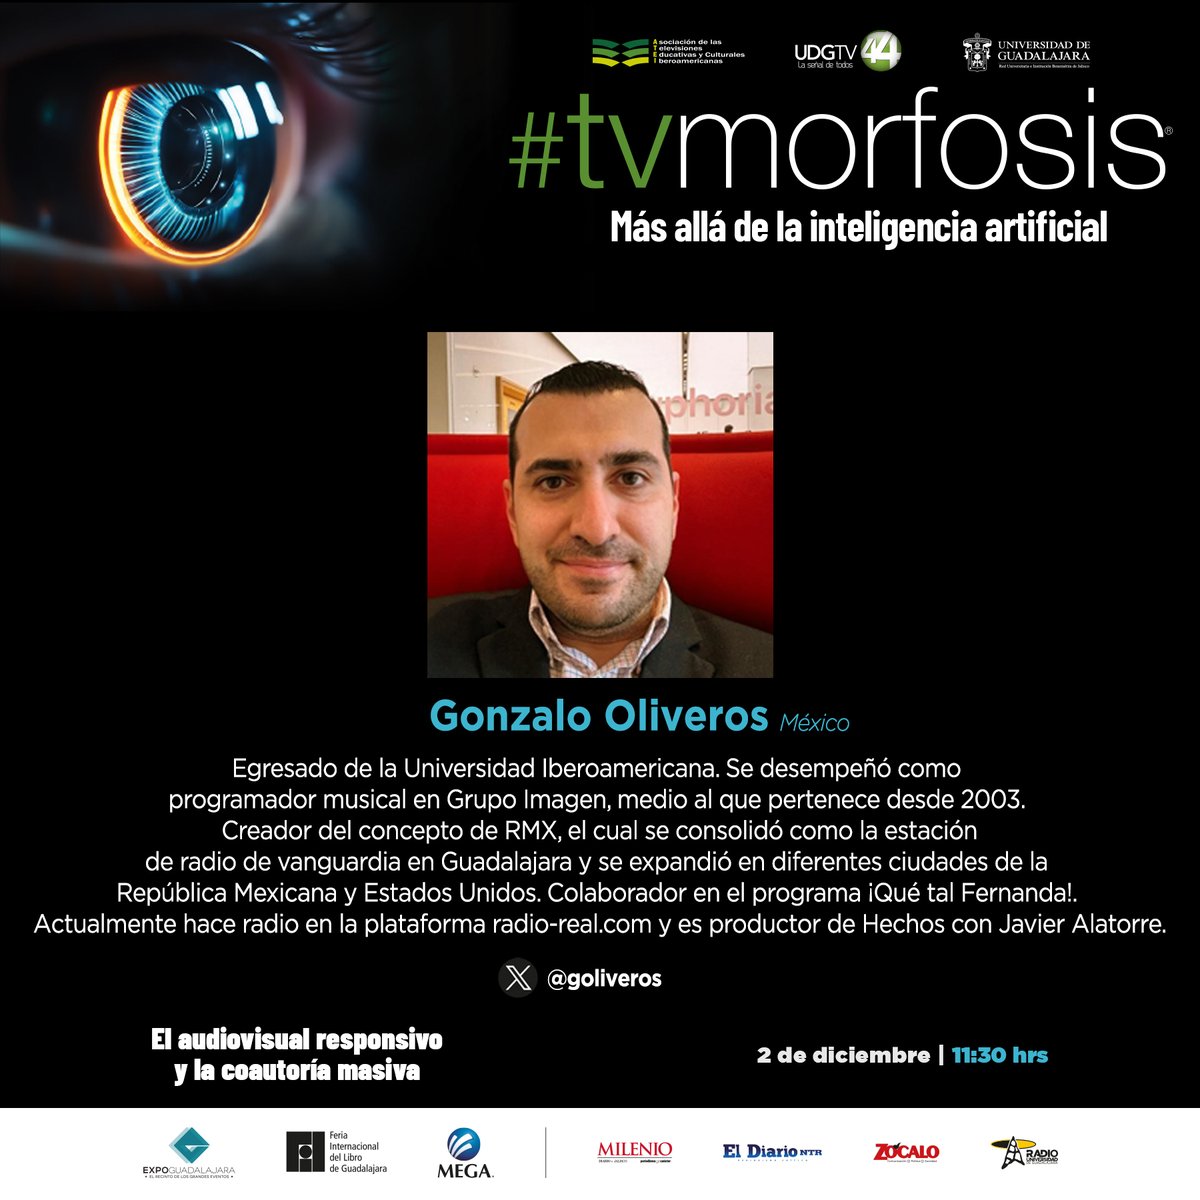 📻📺@goliveros será parte del panel 'El audiovisual responsivo y la coautoría masiva' en #TVMORFOSIS. 
Él es creador del concepto @RMXradio y productor de #Hechos con @Javier_Alatorre. 

🗓️2 diciembre 
⌚11:30 hrs